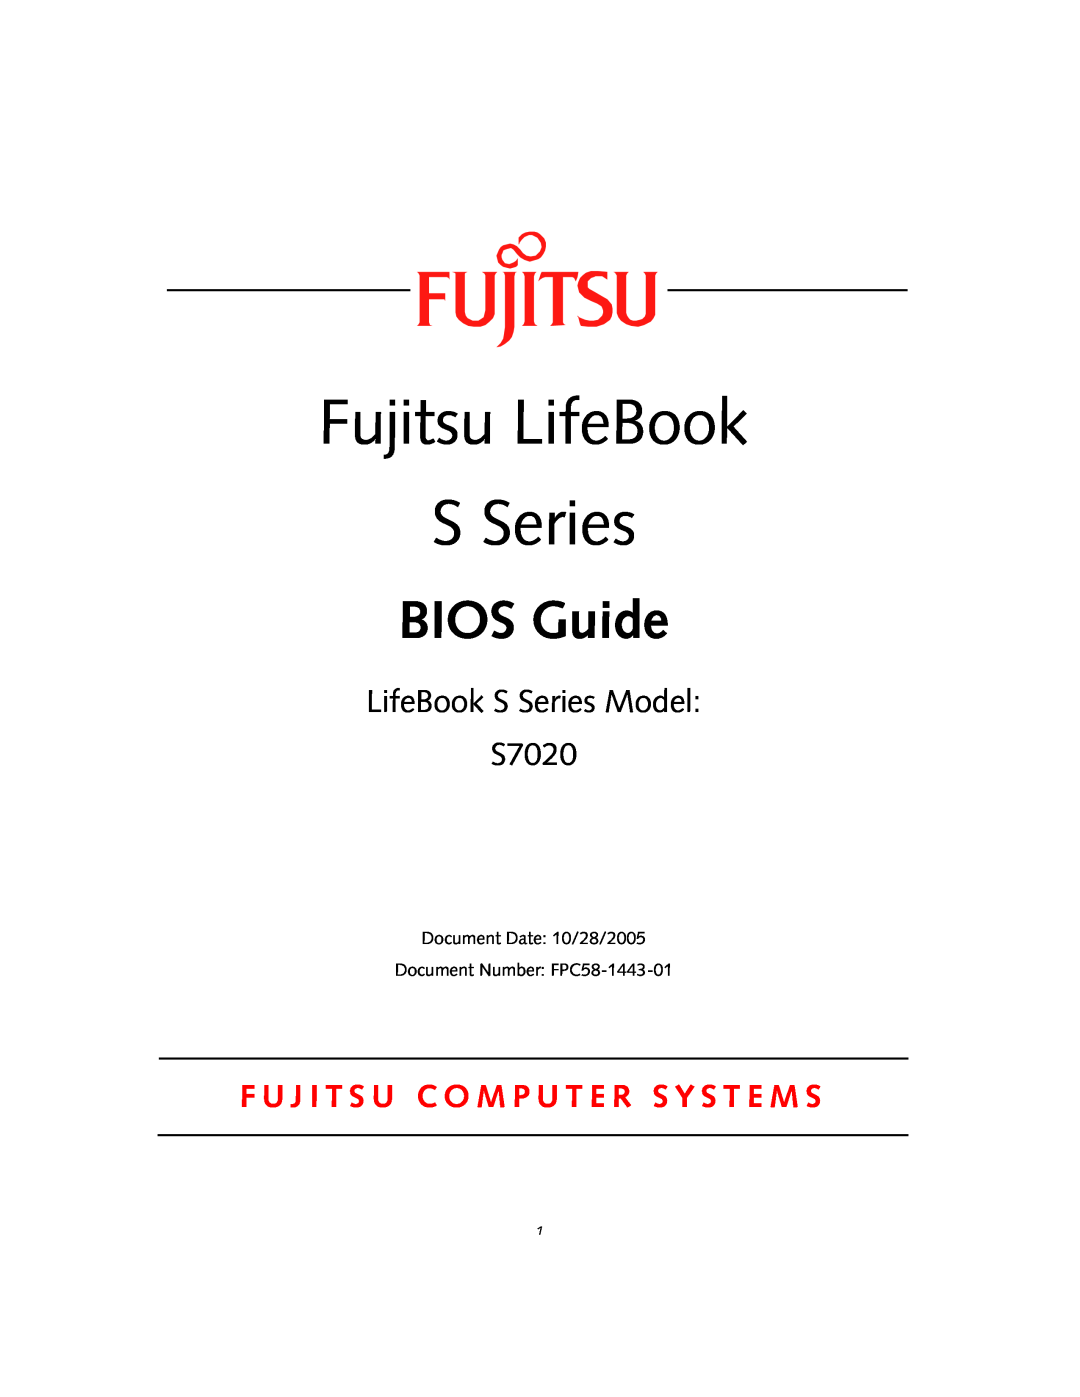 Fujitsu S7020D manual Fujitsu LifeBook S Series, BIOS Guide, LifeBook S Series Model S7020 